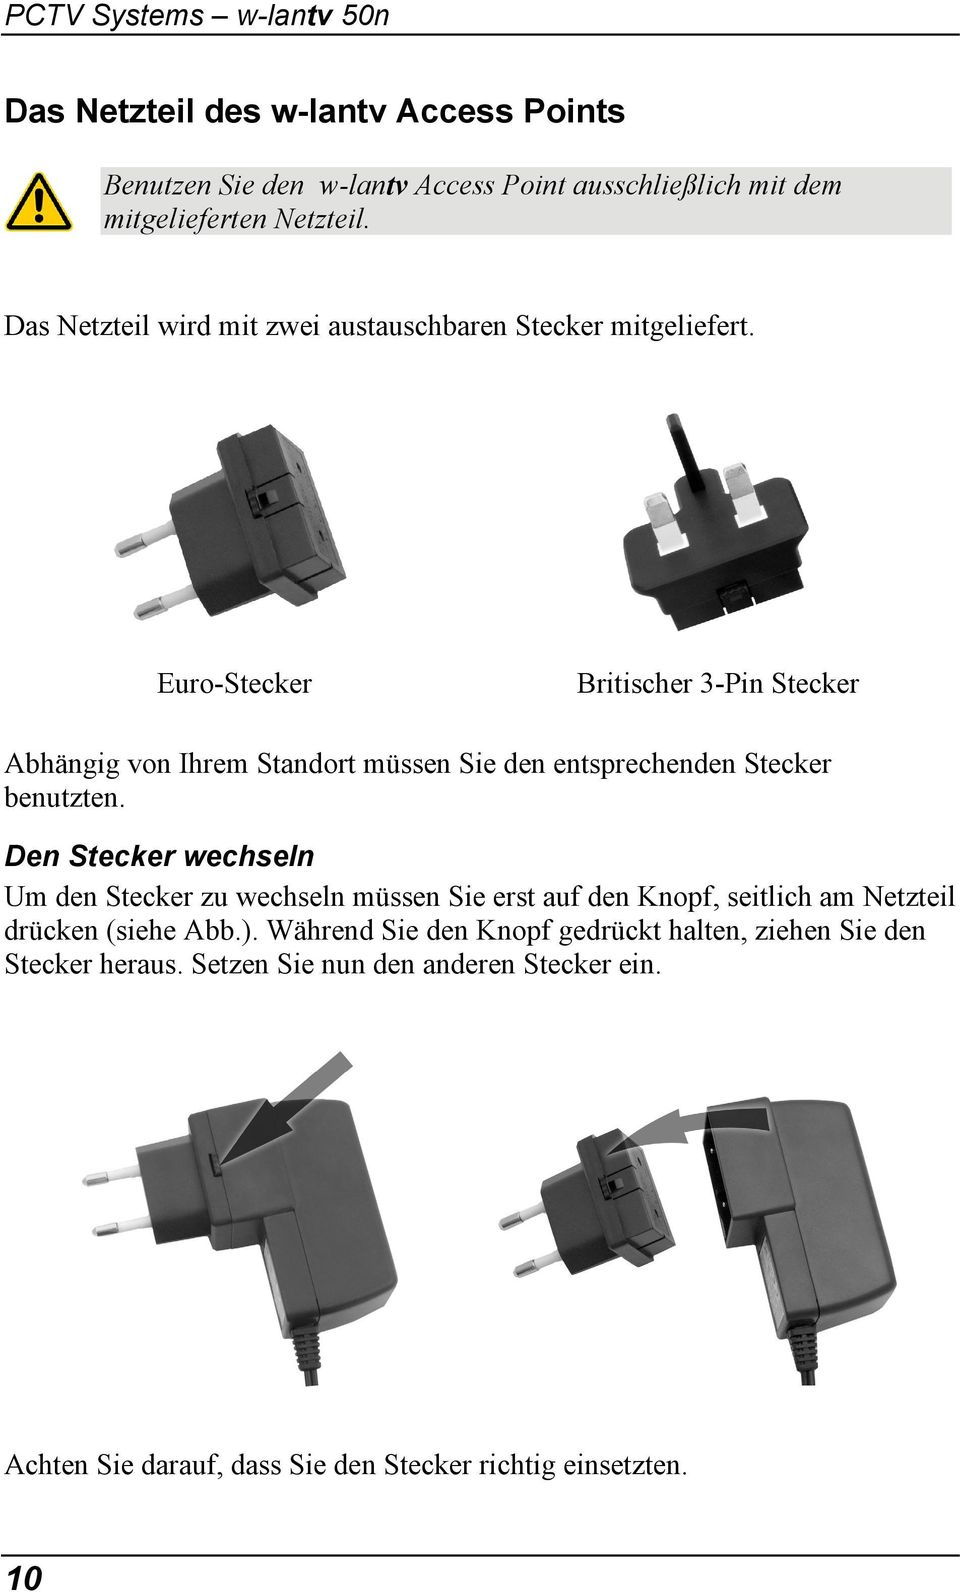 Euro-Stecker Britischer 3-Pin Stecker Abhängig von Ihrem Standort müssen Sie den entsprechenden Stecker benutzten.